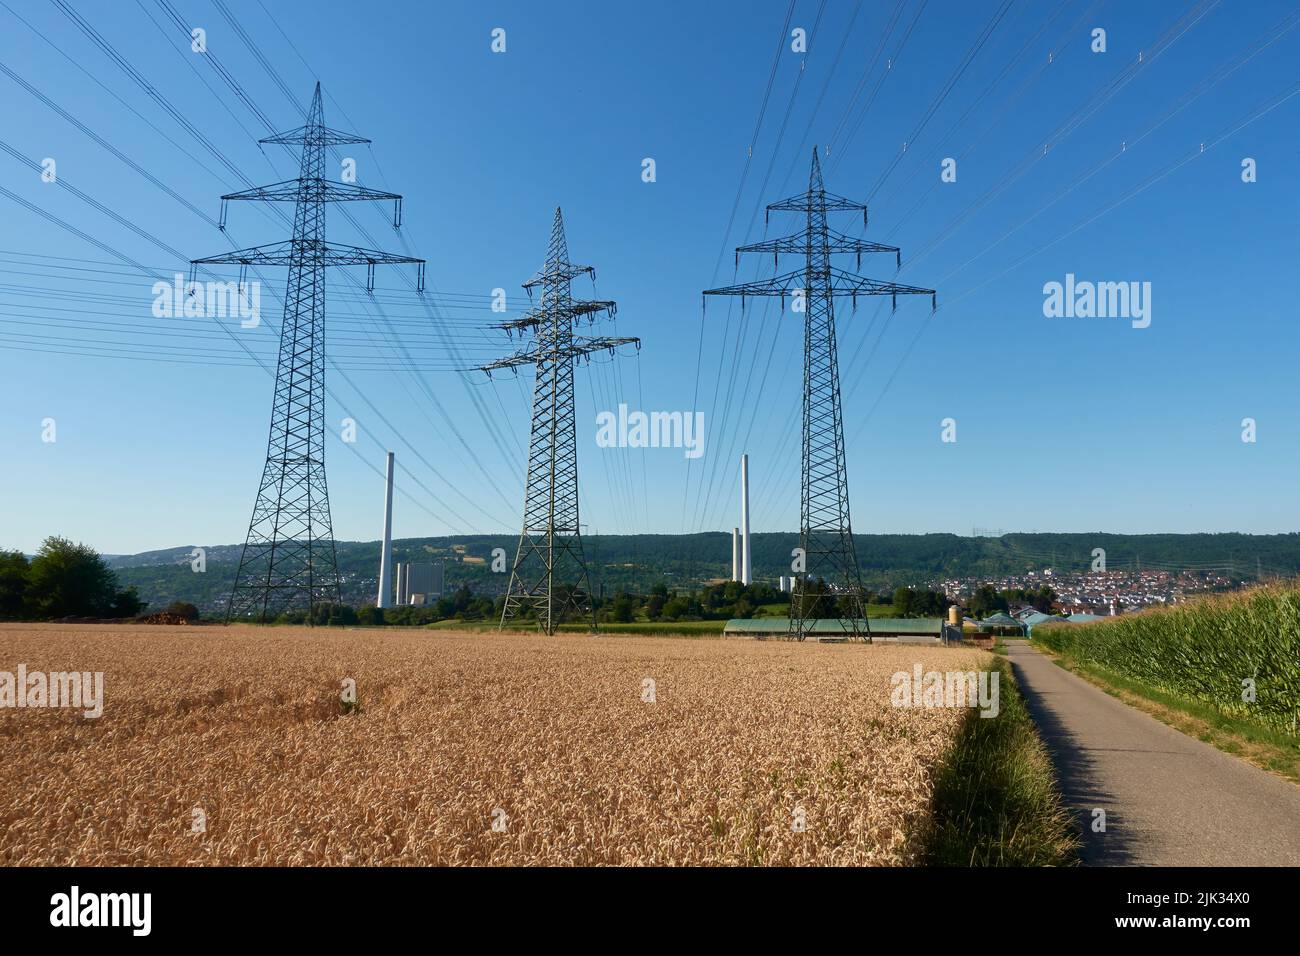 La centrale au charbon est hors service. Paysage avec poteaux électriques et champ de blé. Sortie de l'énergie du charbon. Allemagne, Deizisau, Altbach. Banque D'Images